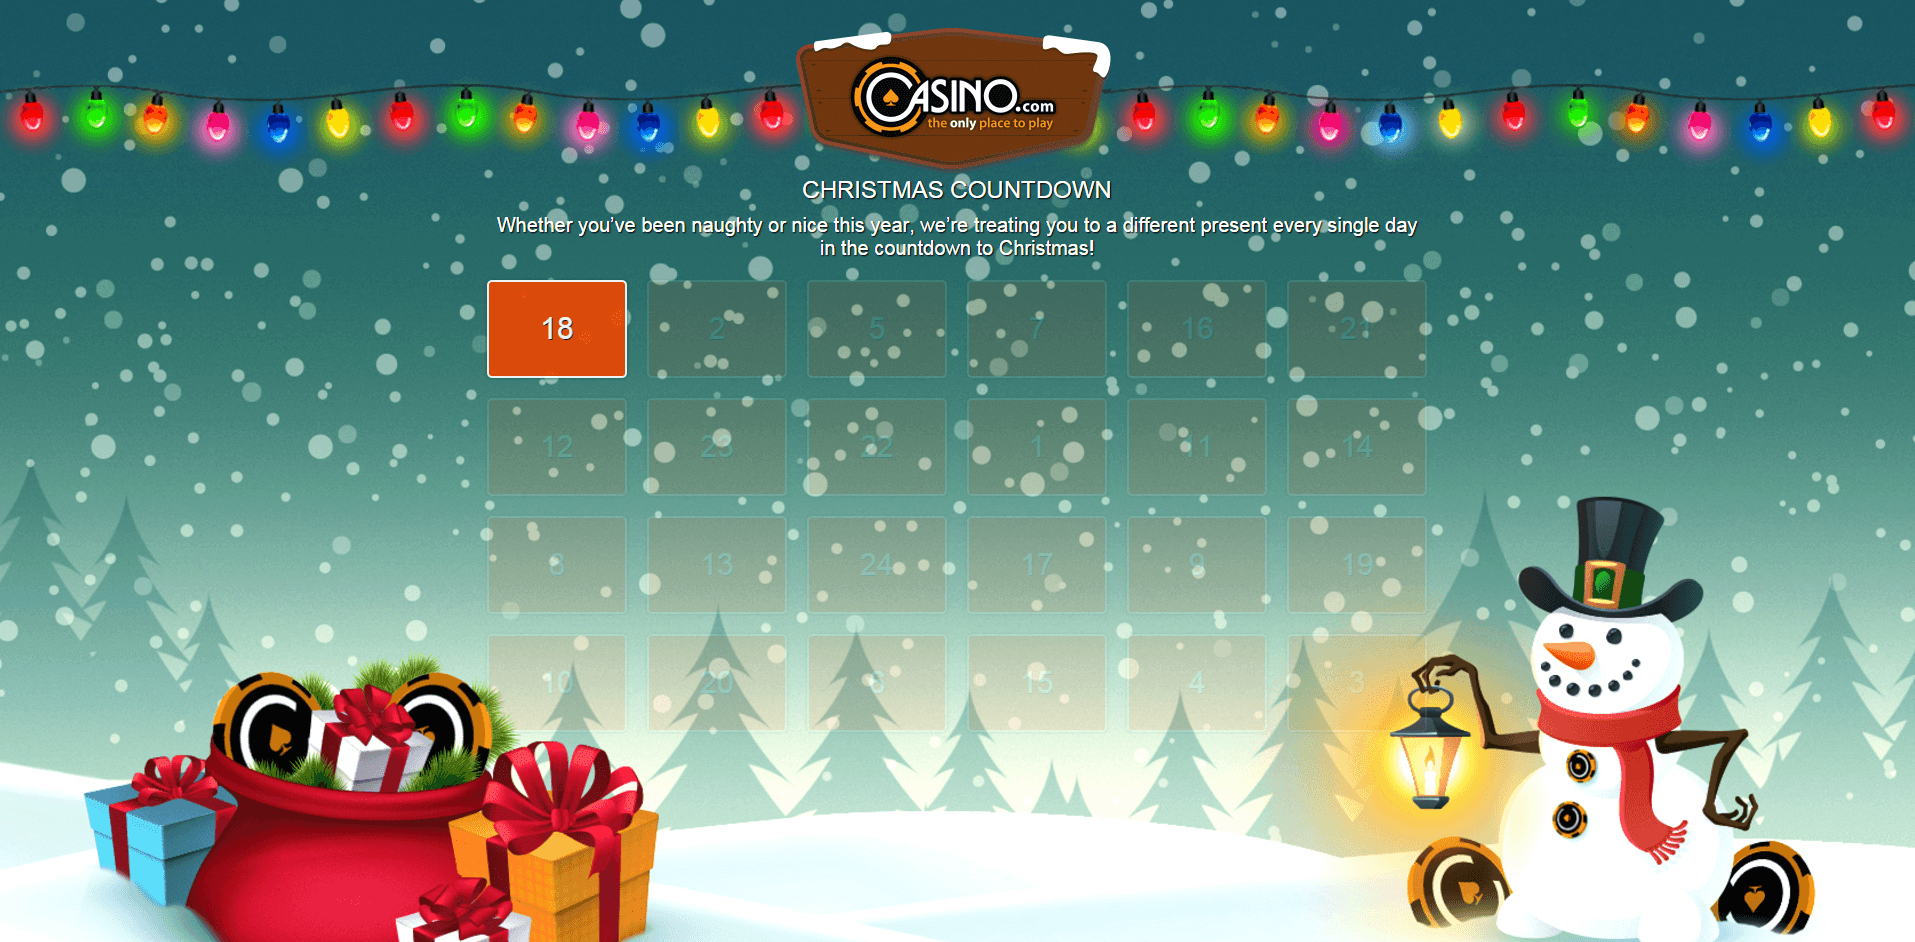 Image of Christmas Countdown Casino.com